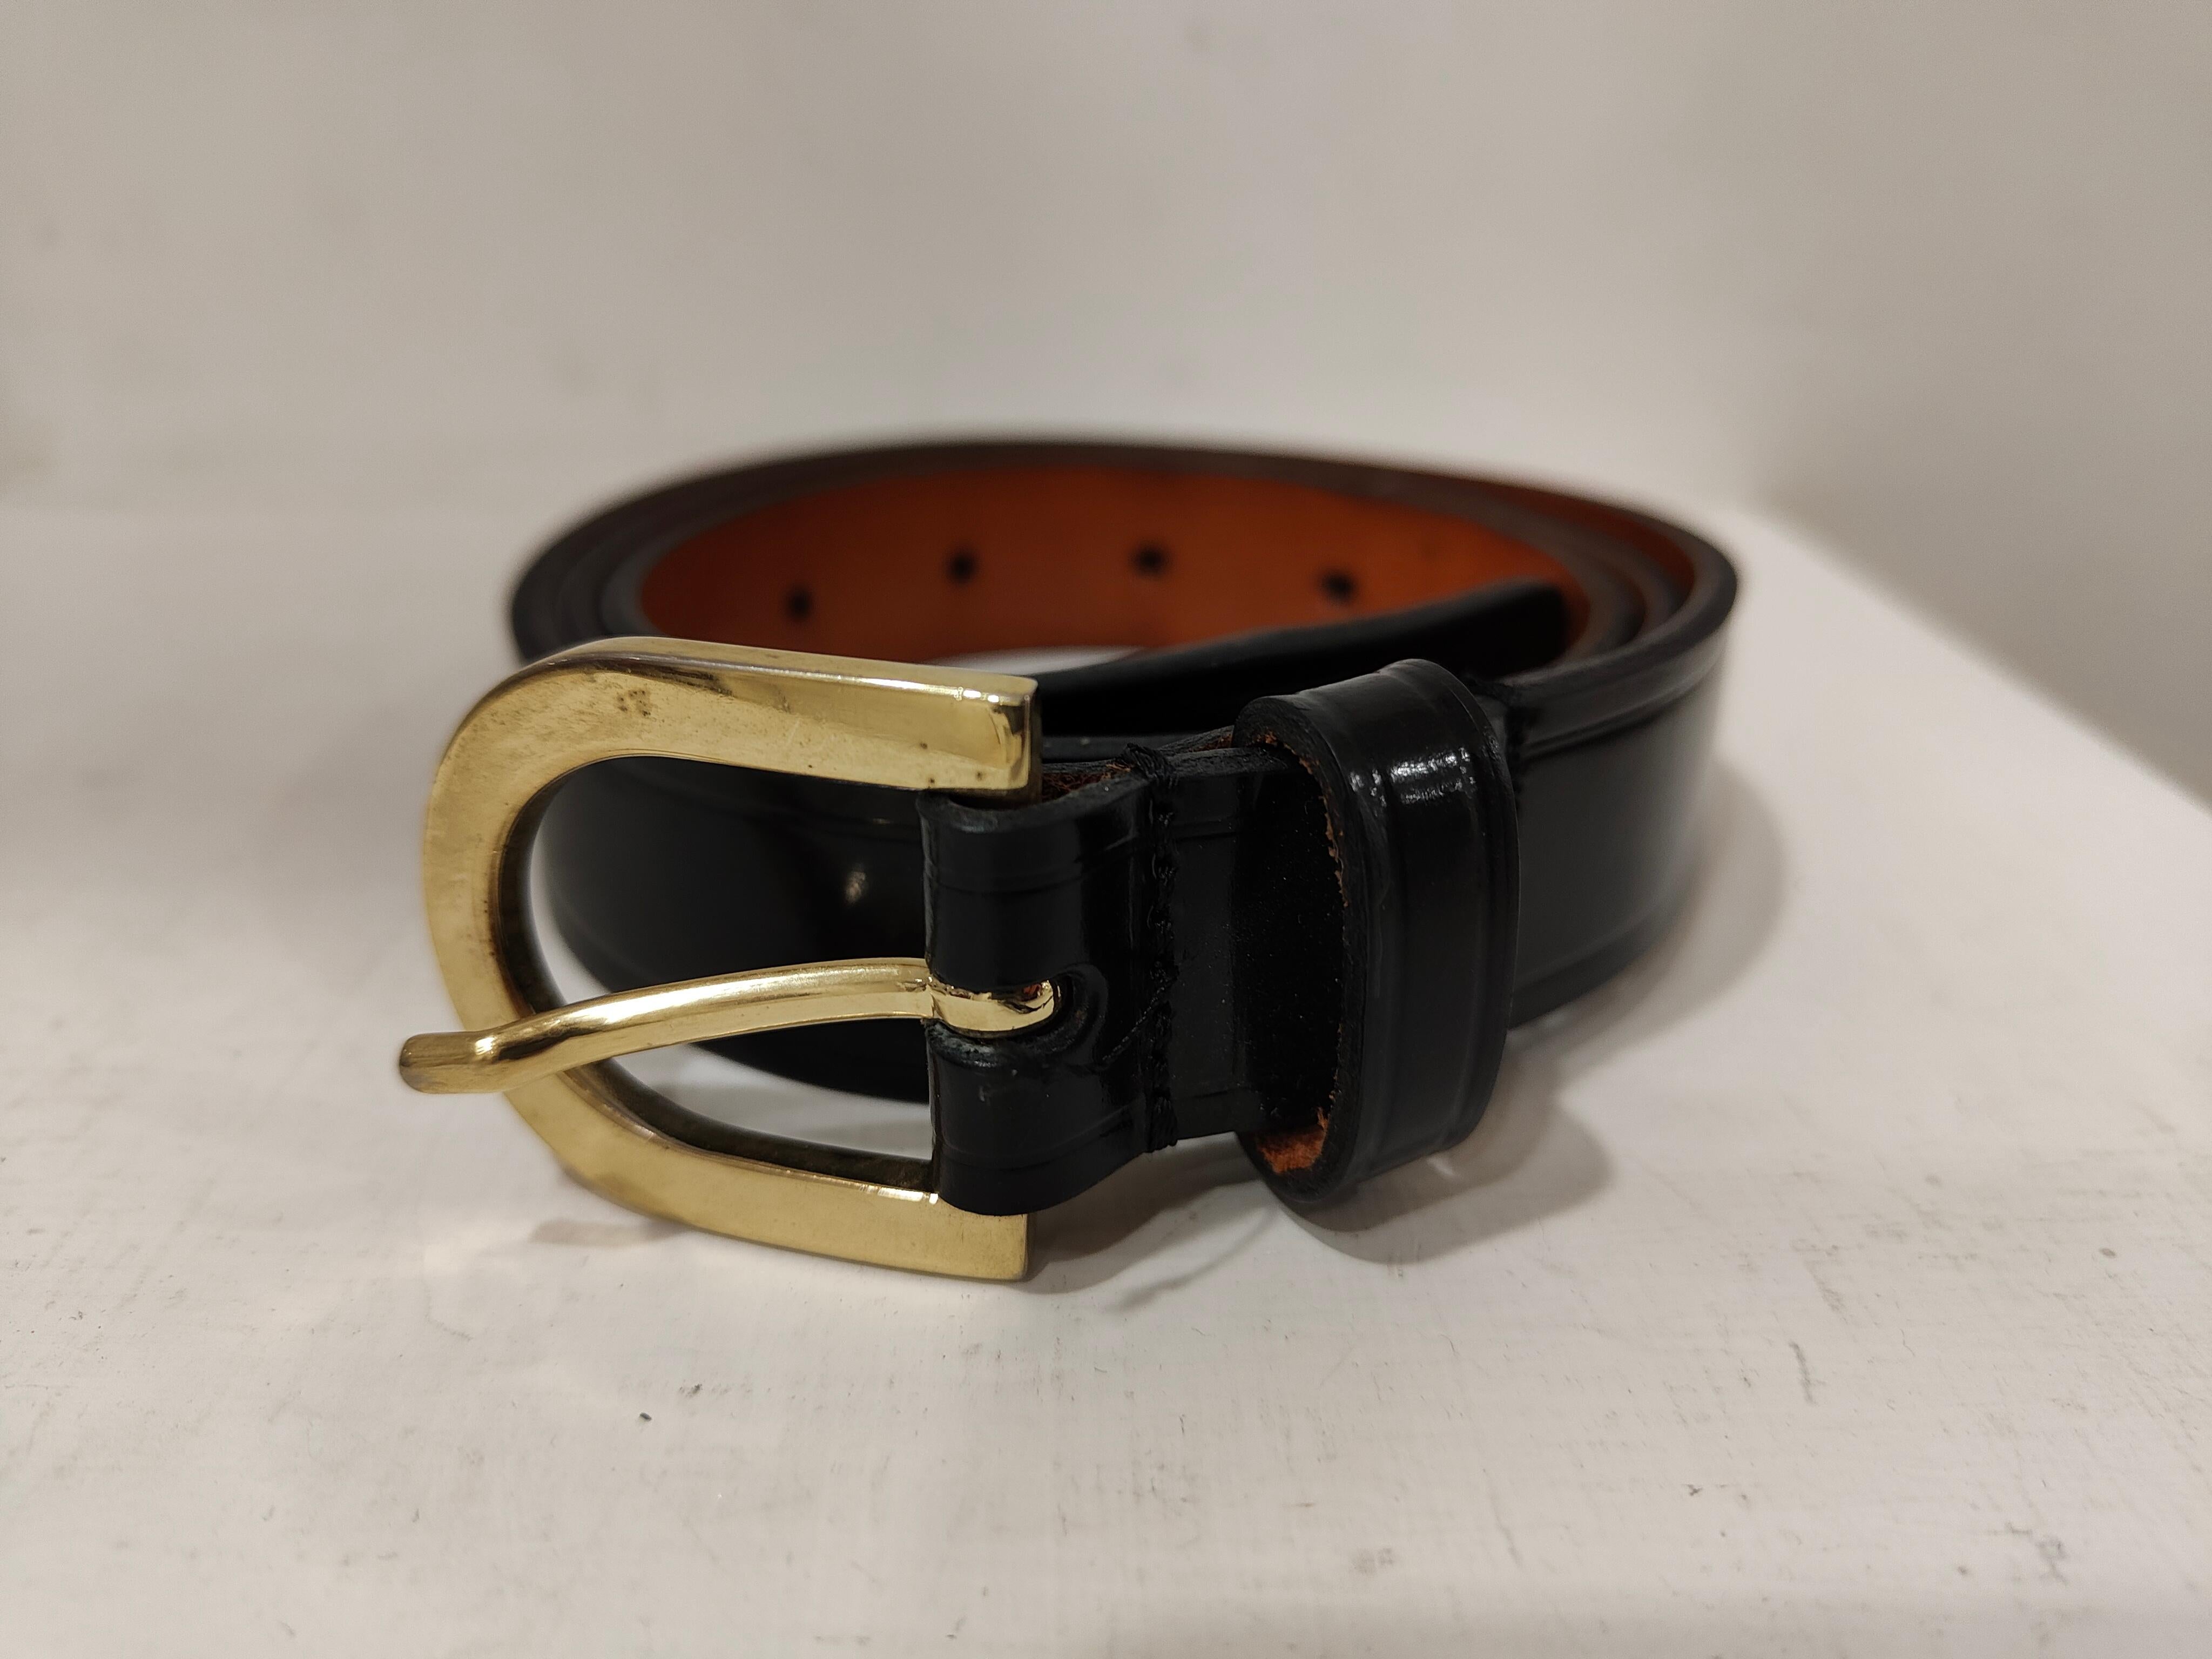 Dsquared black leather gold hardware belt
h 2.5 cm